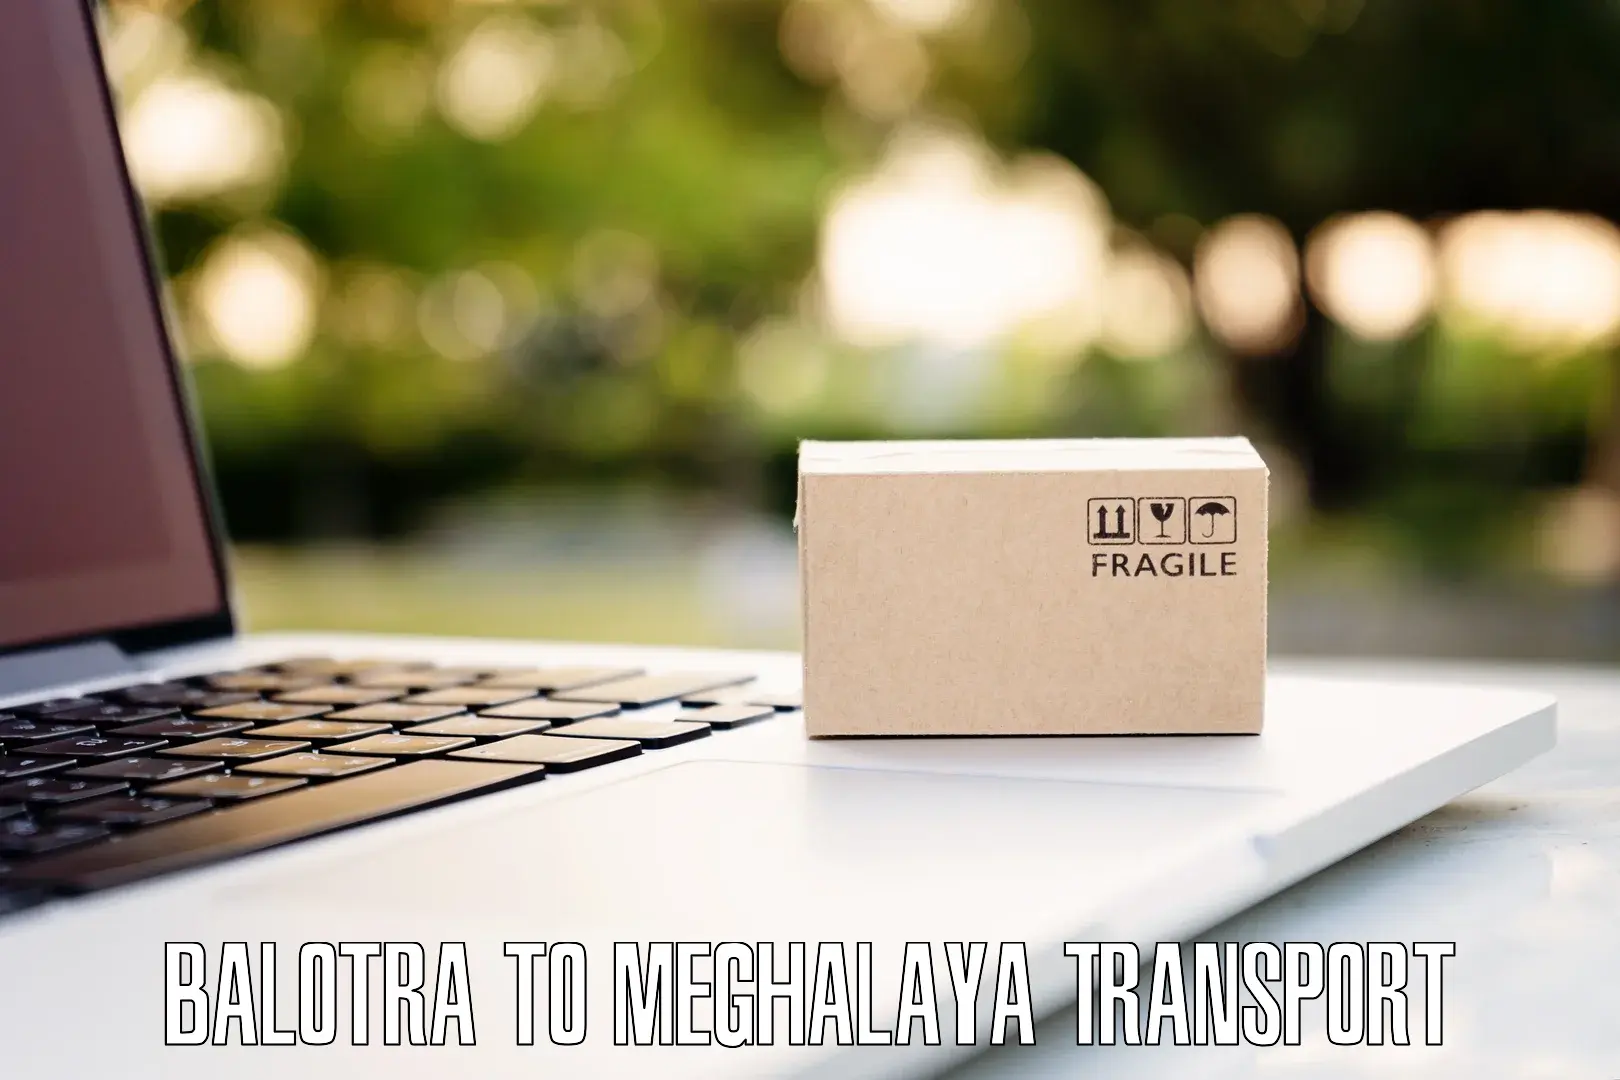 Interstate goods transport Balotra to Meghalaya